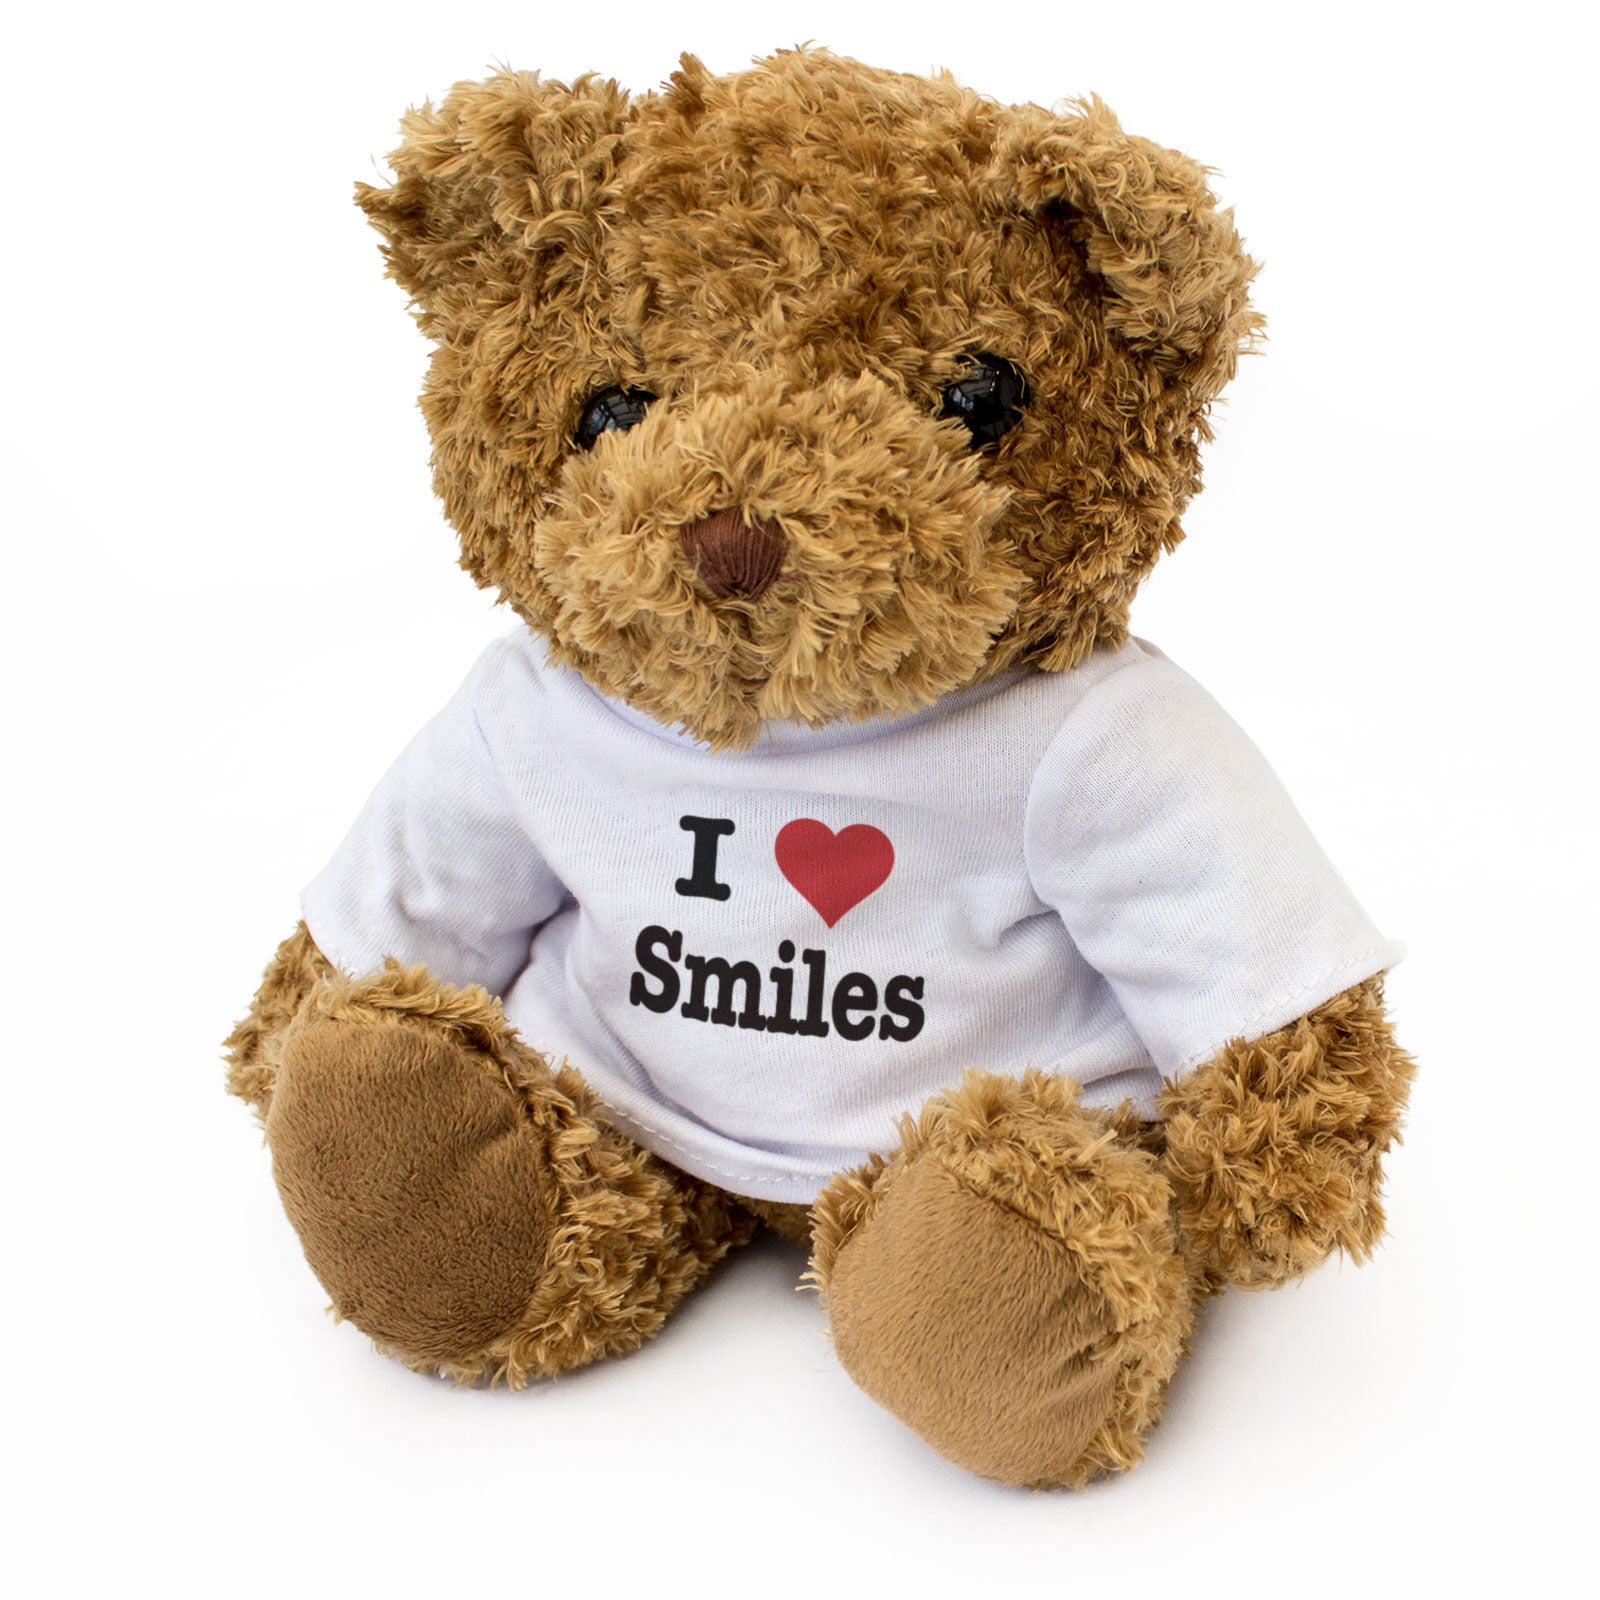 I Love Smiles - Teddy Bear